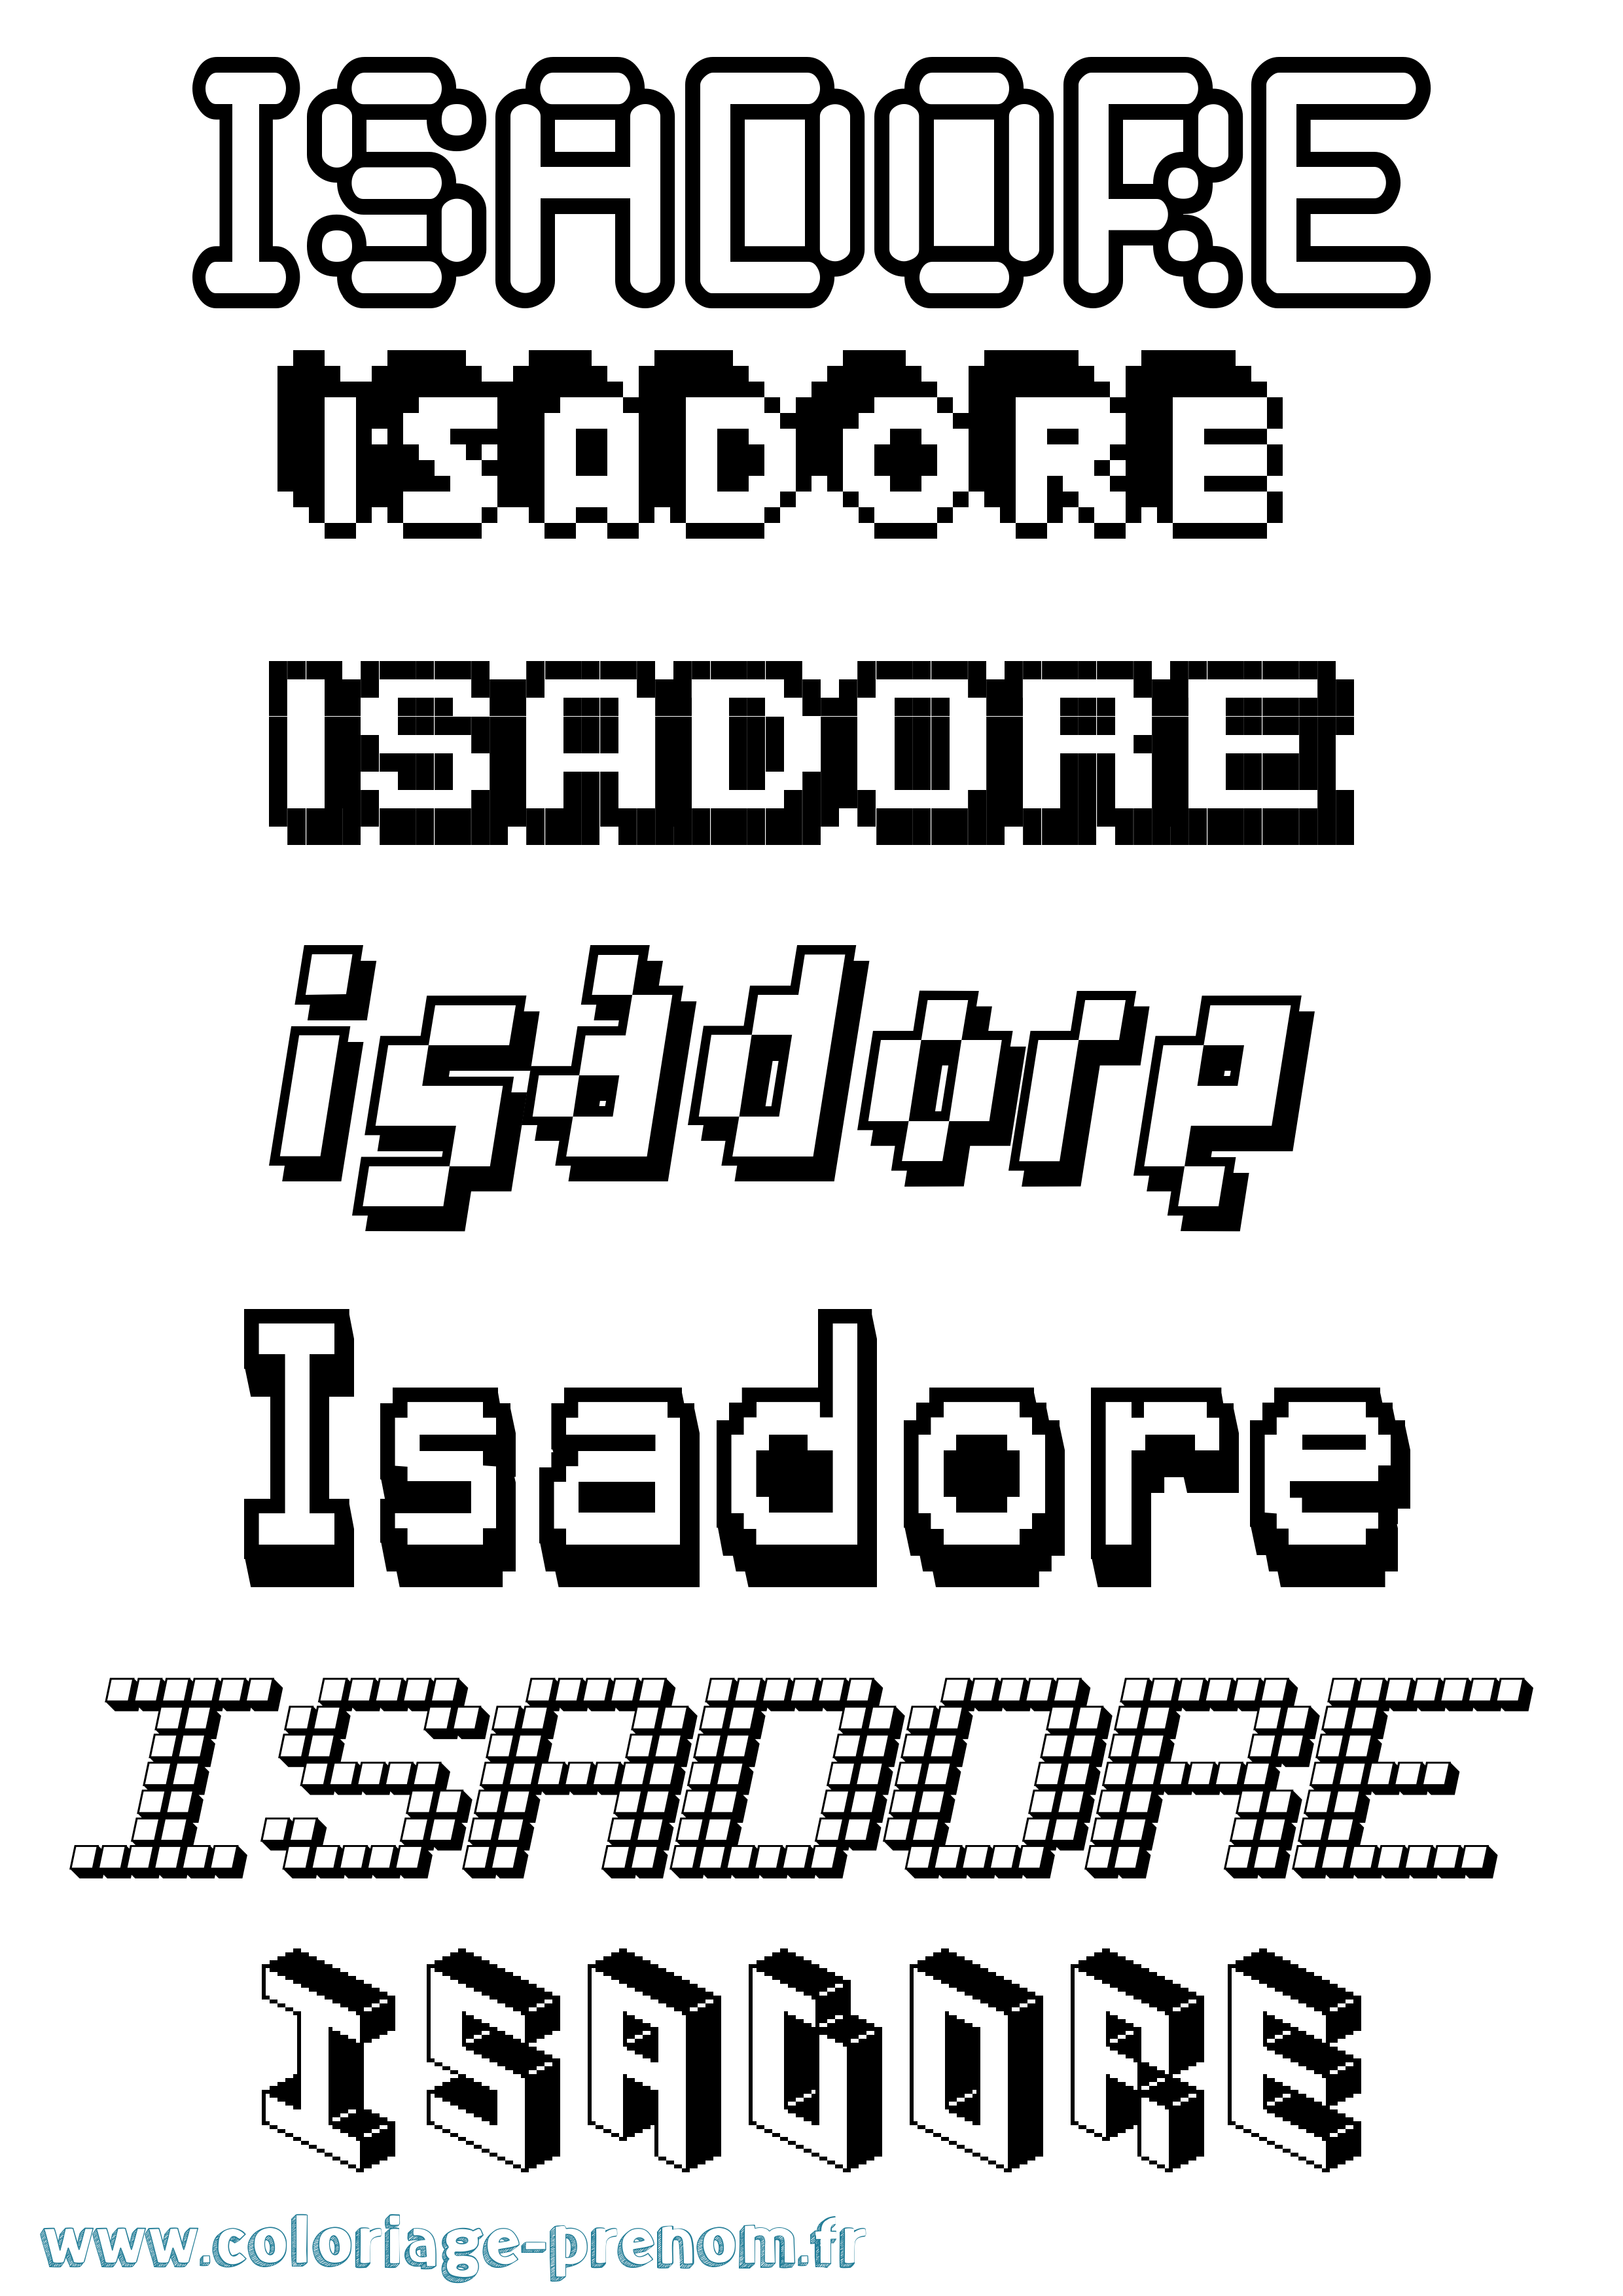 Coloriage prénom Isadore Pixel